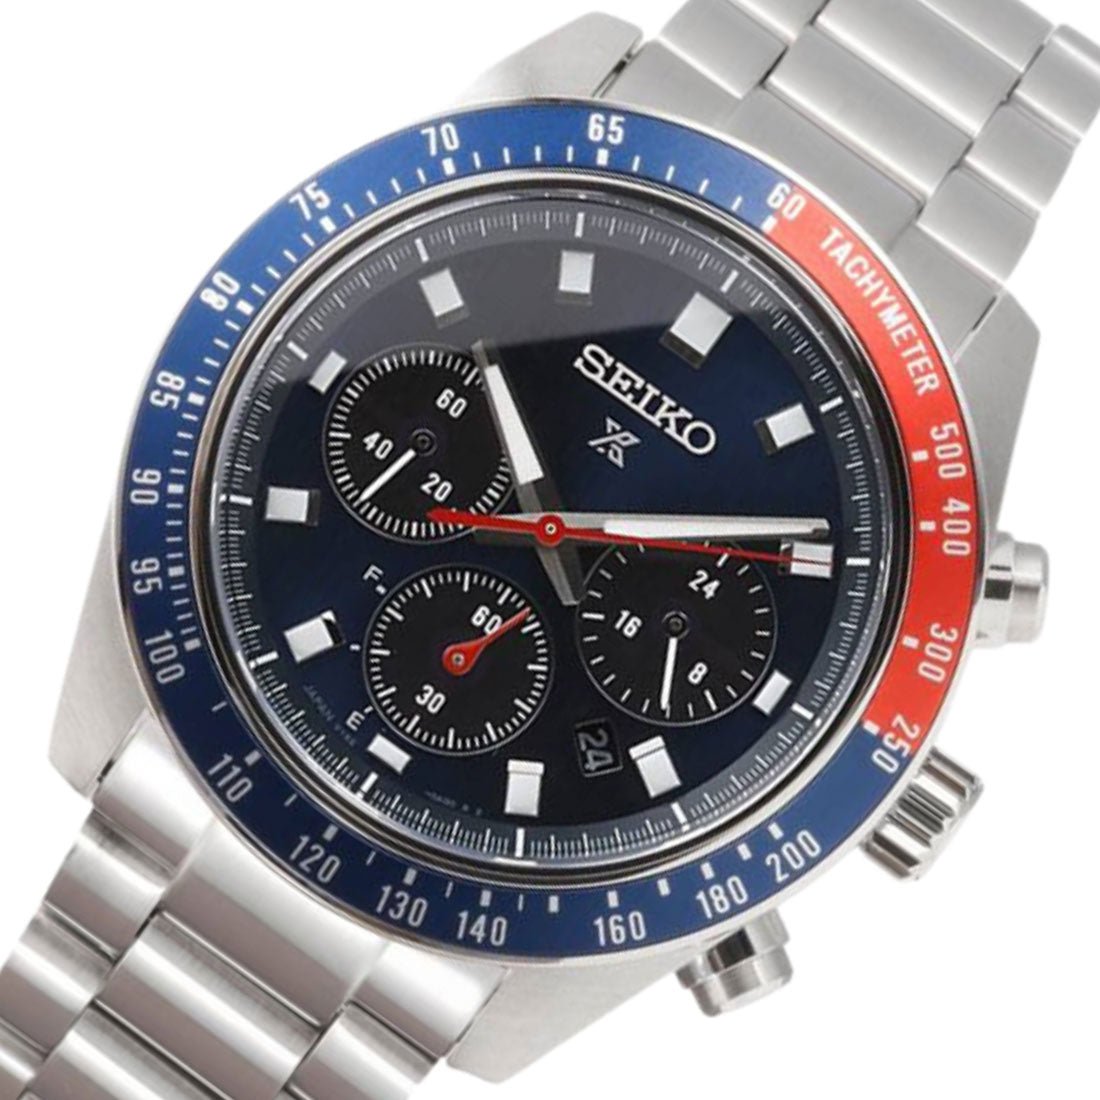 Seiko Prospex SpeedTimer SBDL097 Chronograph Solar Blue Dial Watch -Seiko